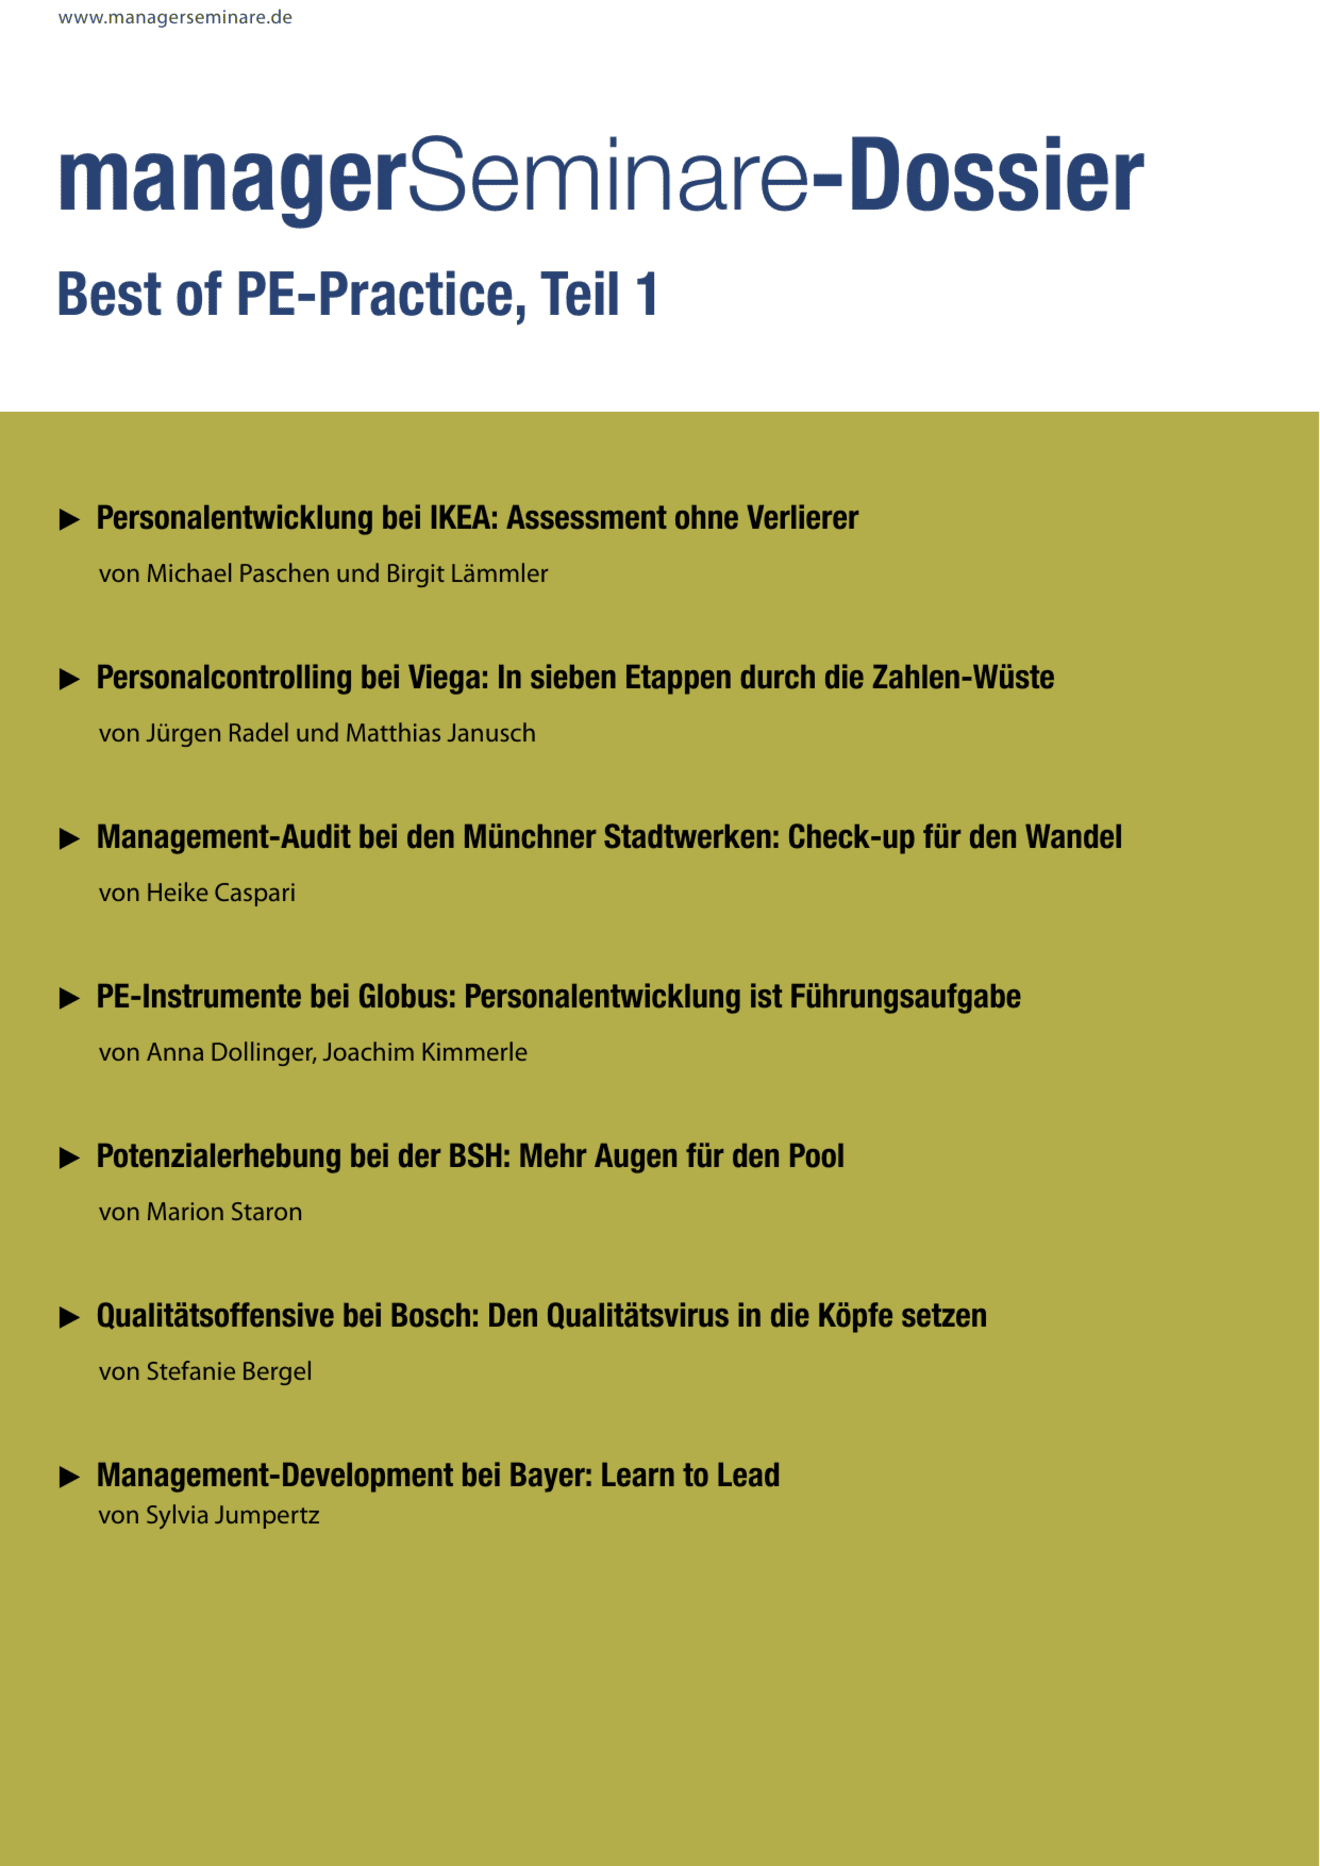 Dossier Best of PE-Practice, Teil 1